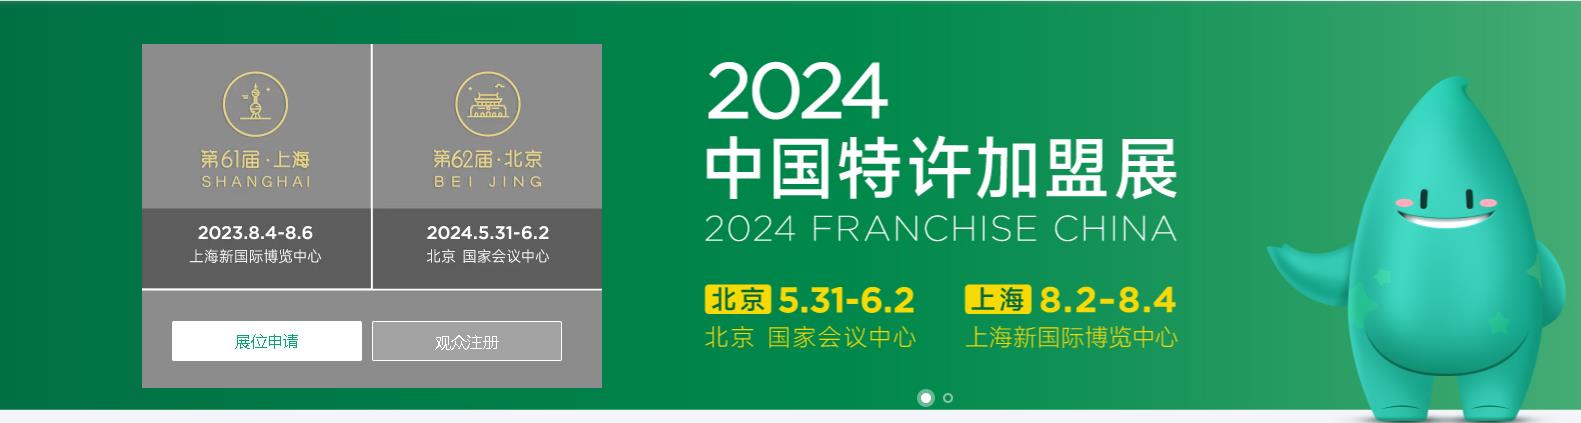 2024中国特许加盟展、北京连锁加盟展览会